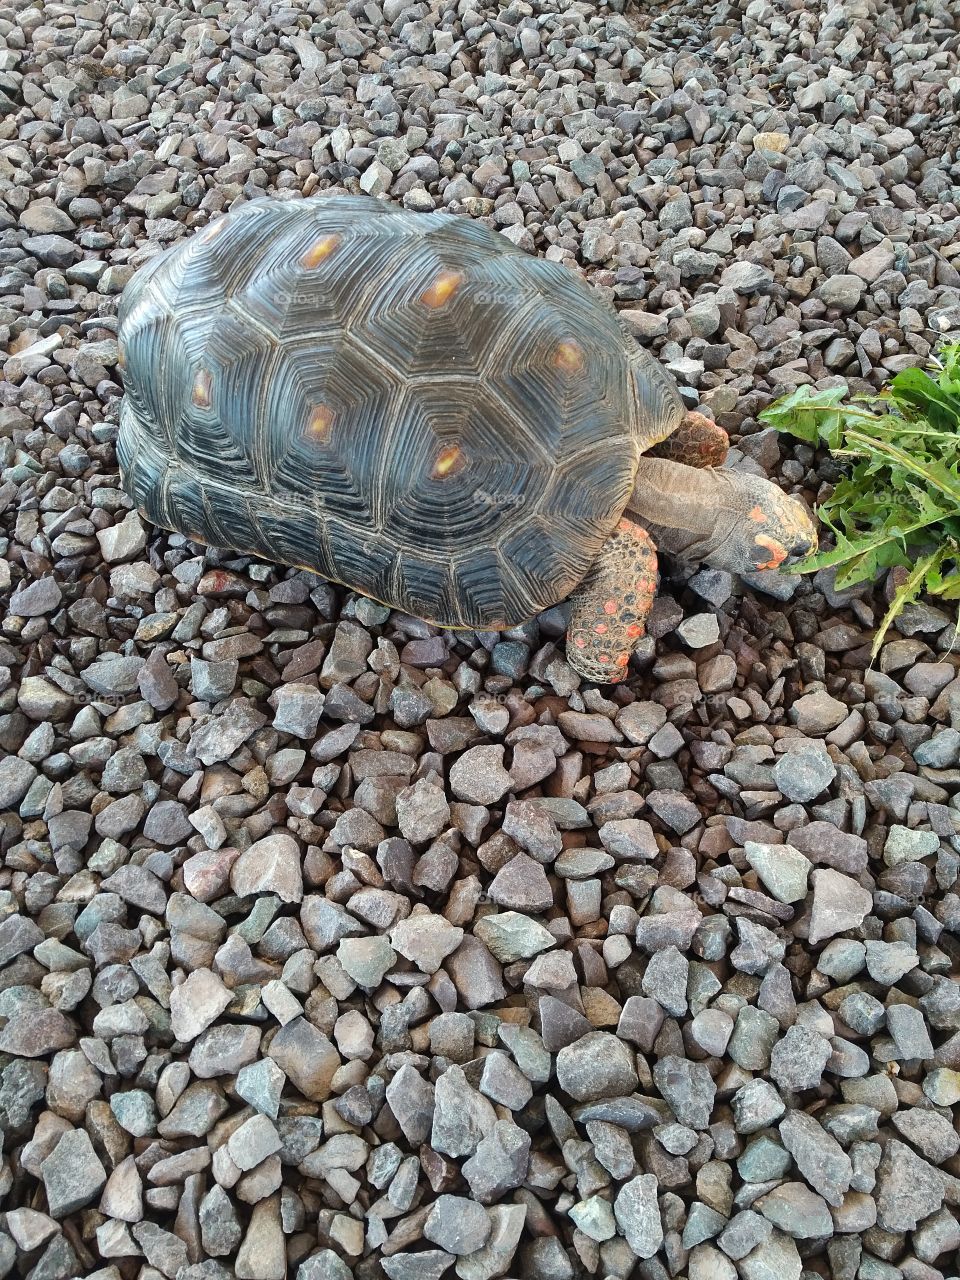 Tortoise munching on grass